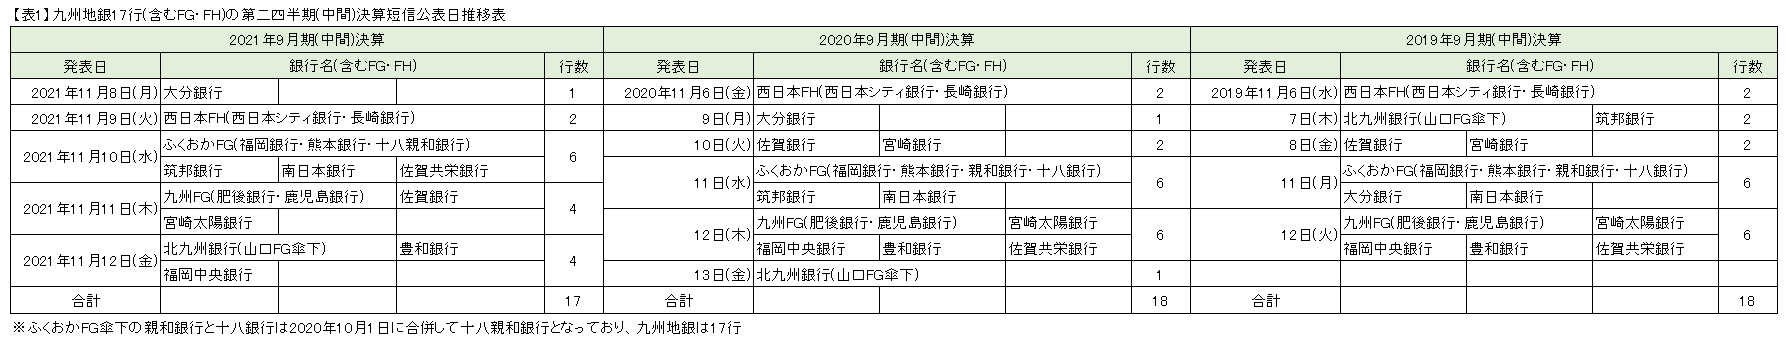 【表1】九州地銀17行(含むFG・FH)の第二四半期(中間)決算短信公表日推移表